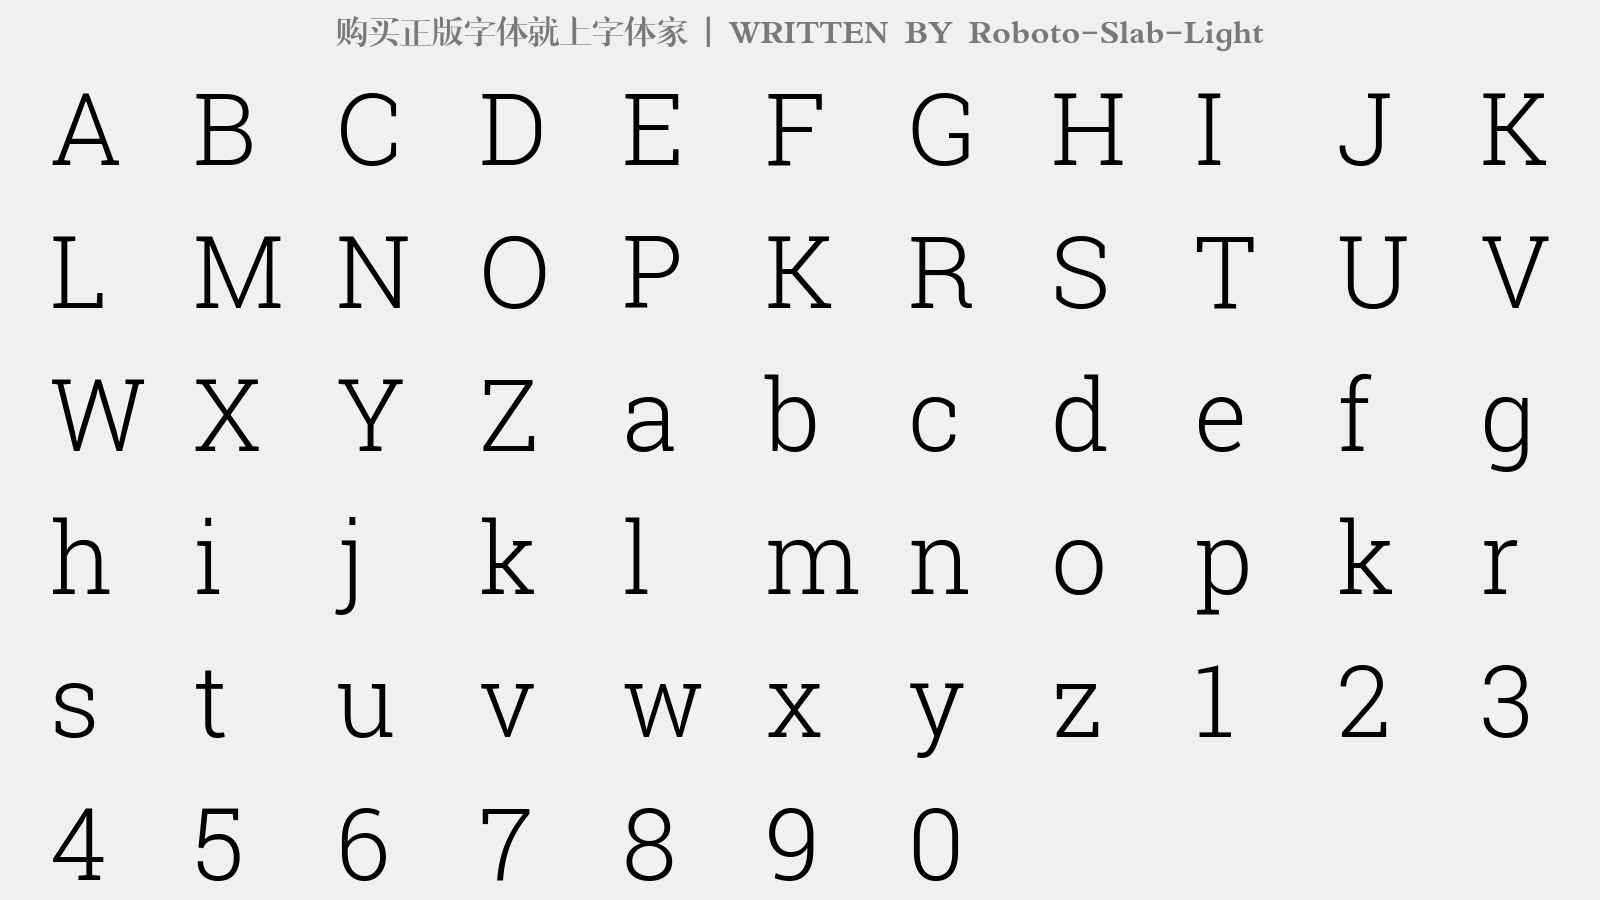 Roboto-Slab-Light - 大写字母/小写字母/数字